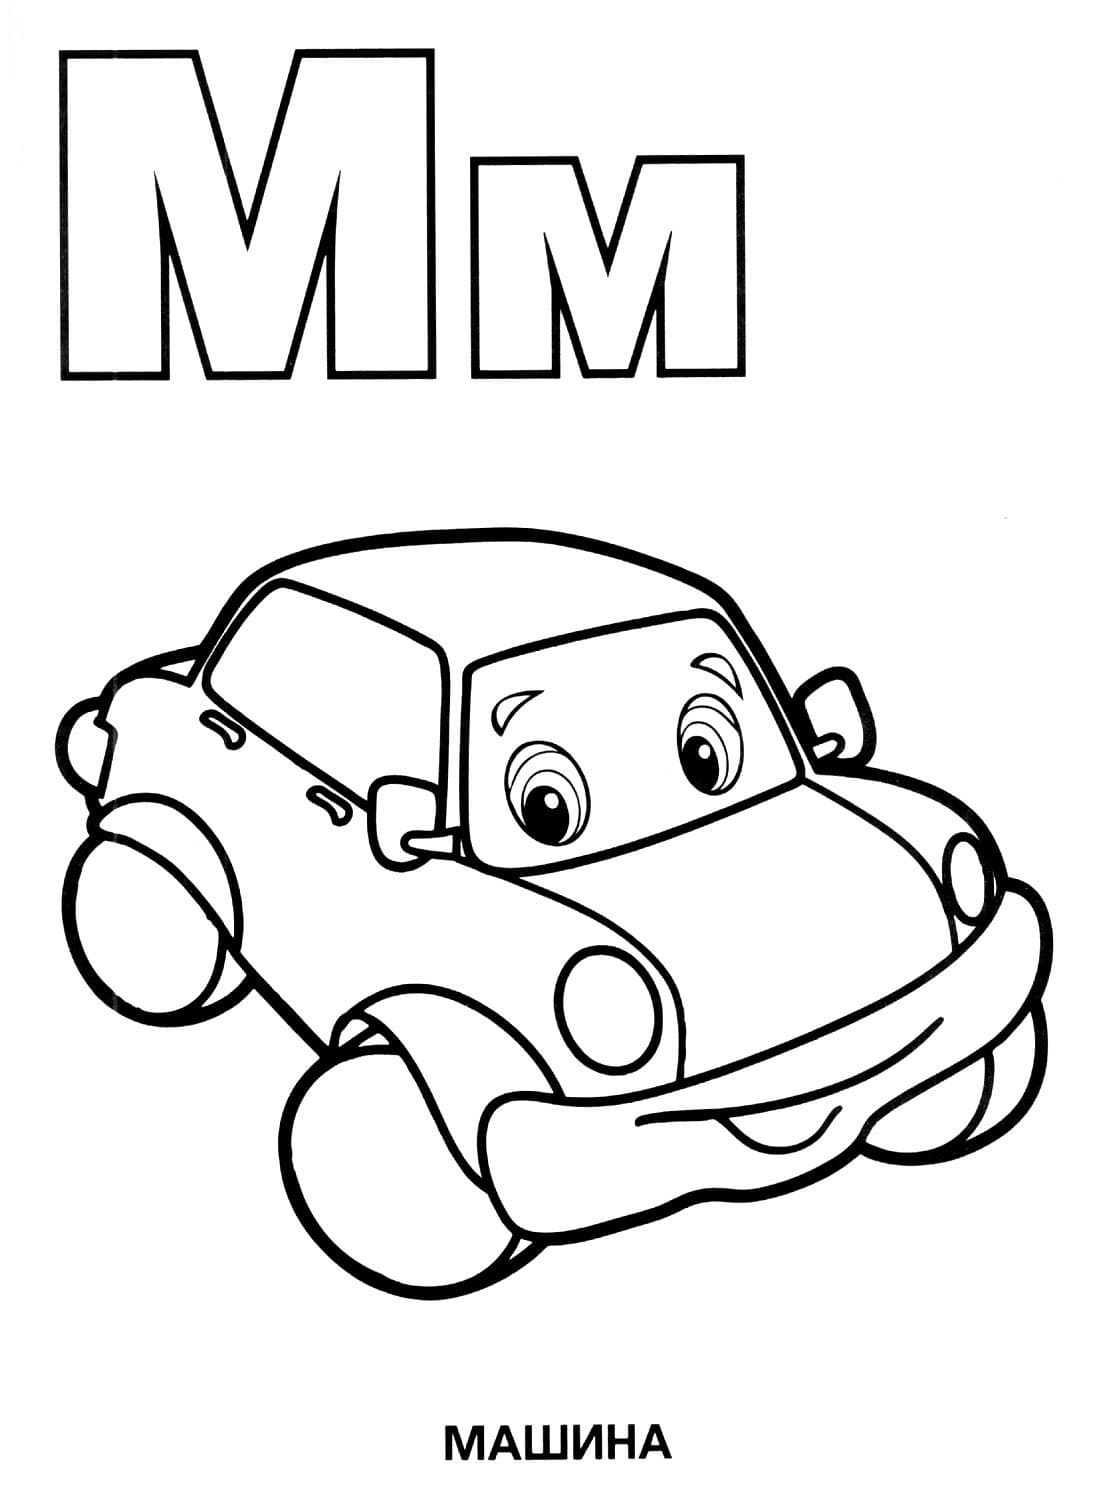 Машина раскраска детская с буквой М